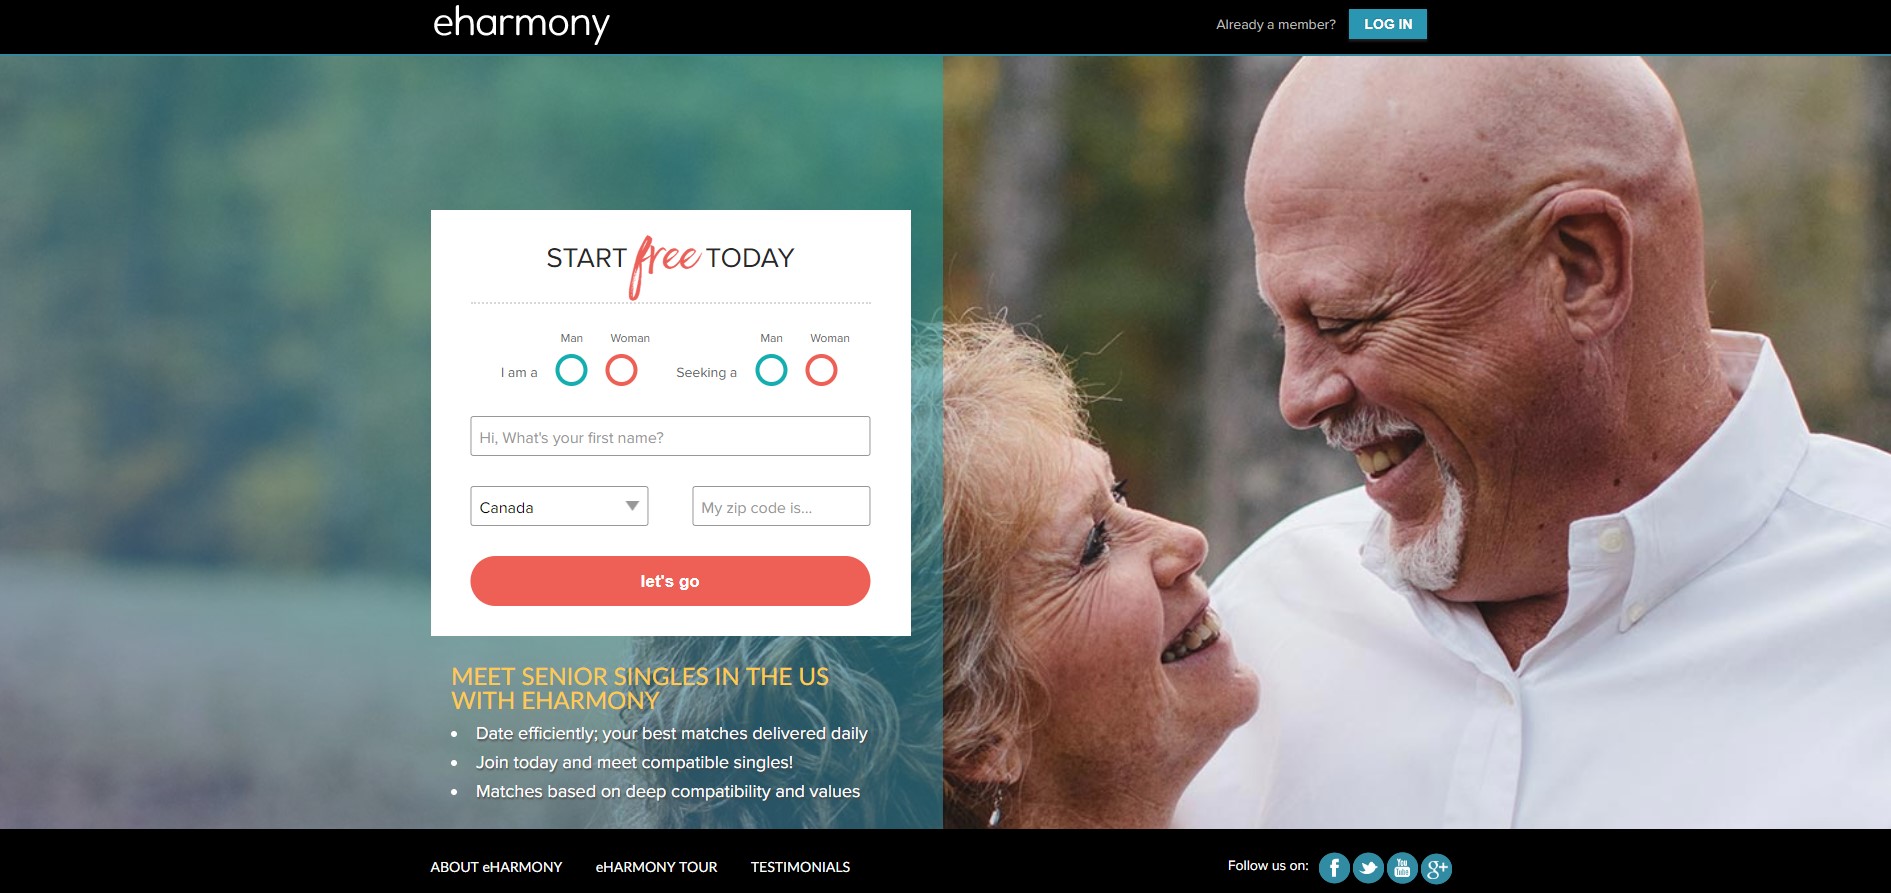 Nine Online Dating Myths for Seniors - eHarmony Advice | Online dating ...